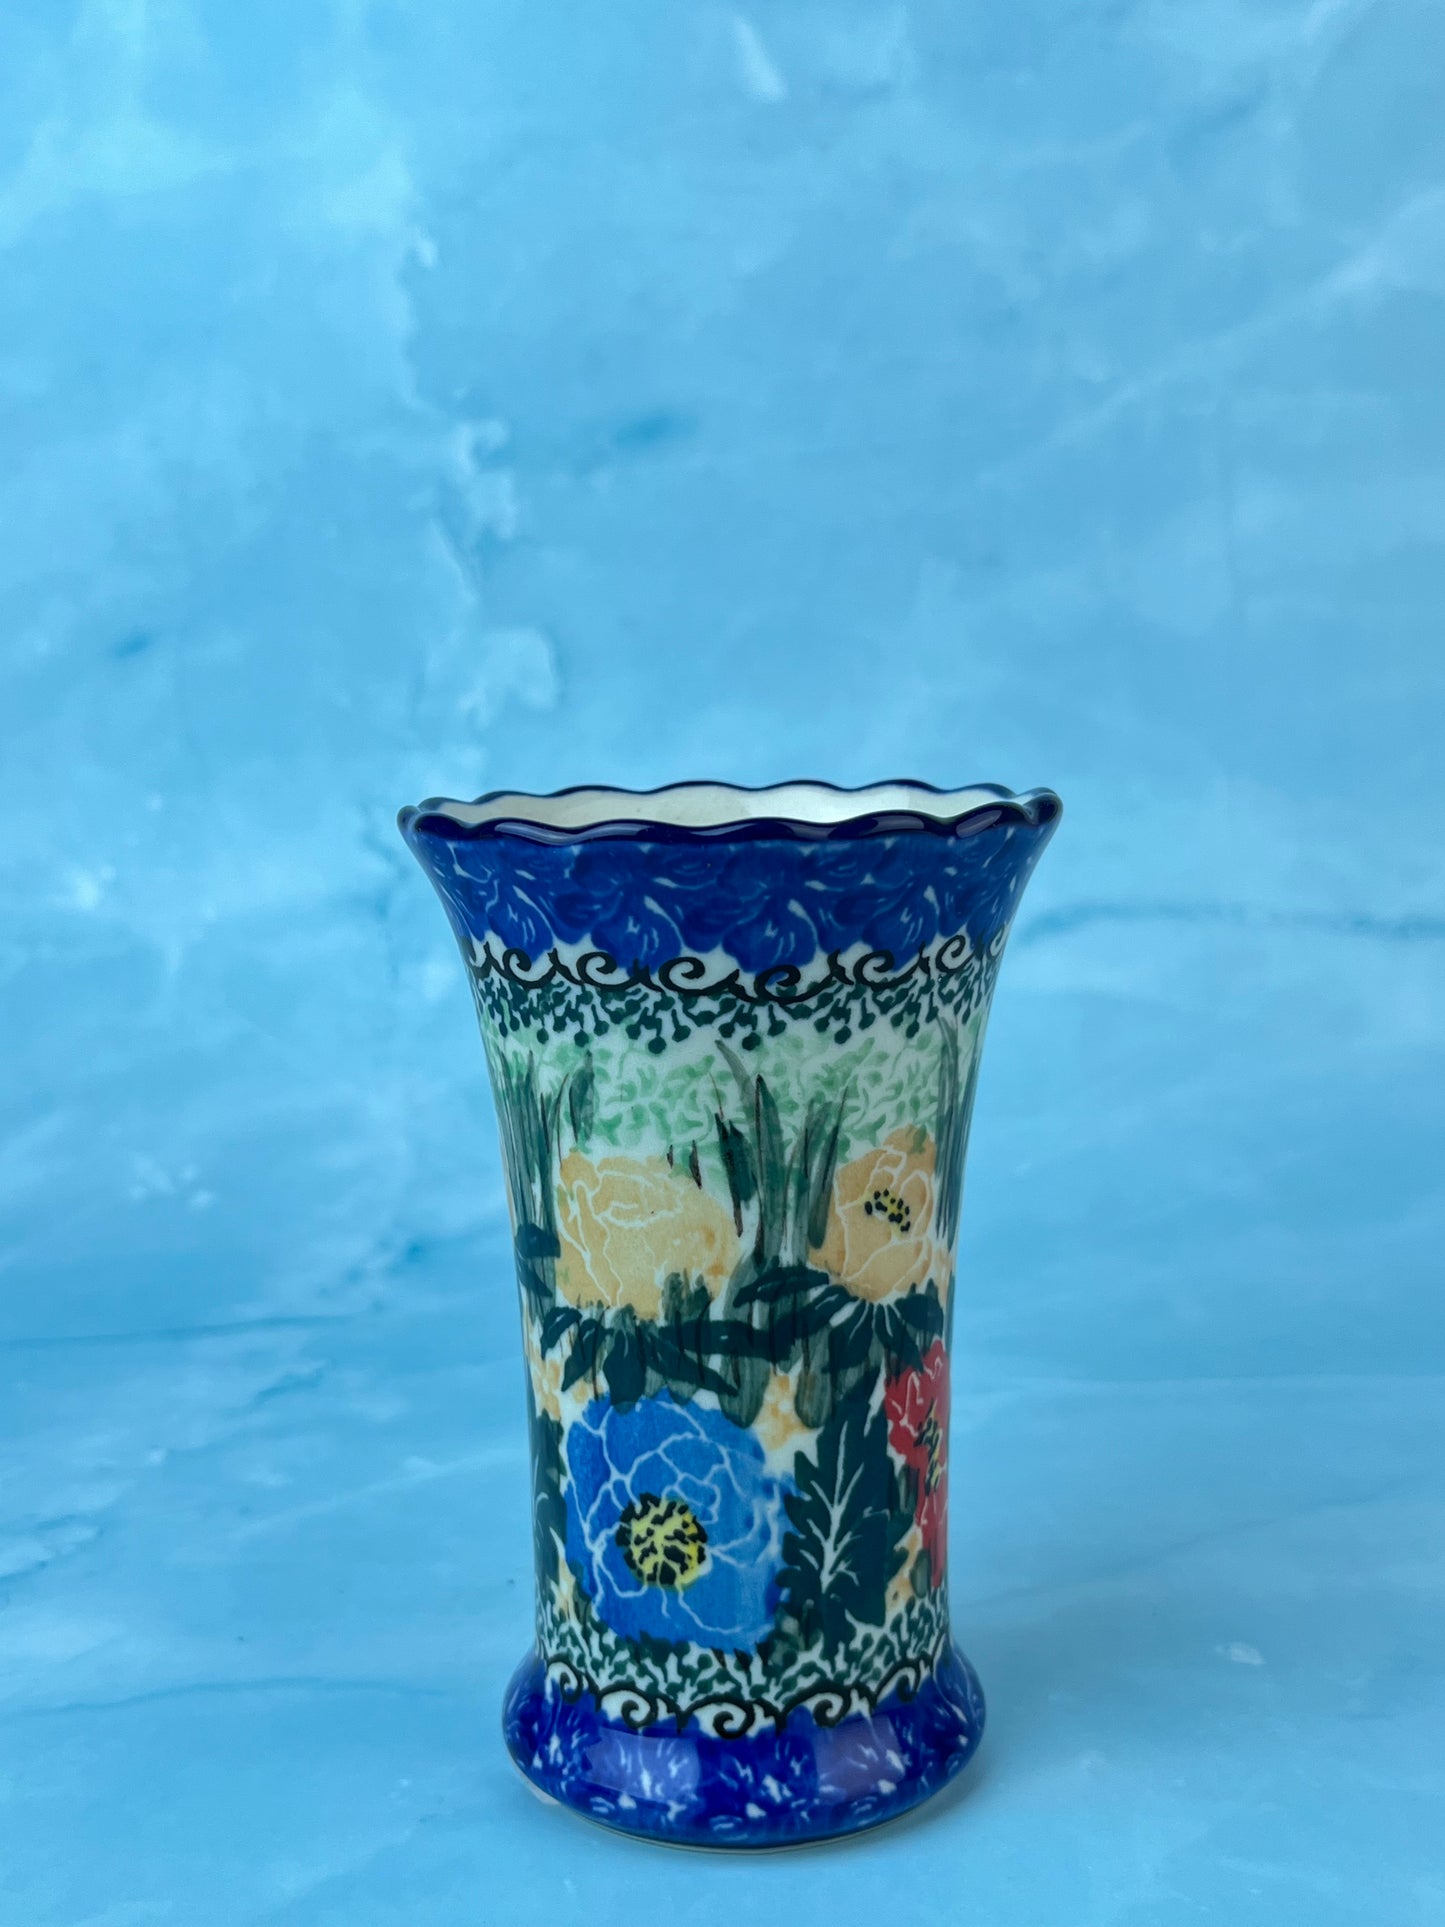 Ruffled Unikat Bud Vase - Shape 127 - Pattern U3553